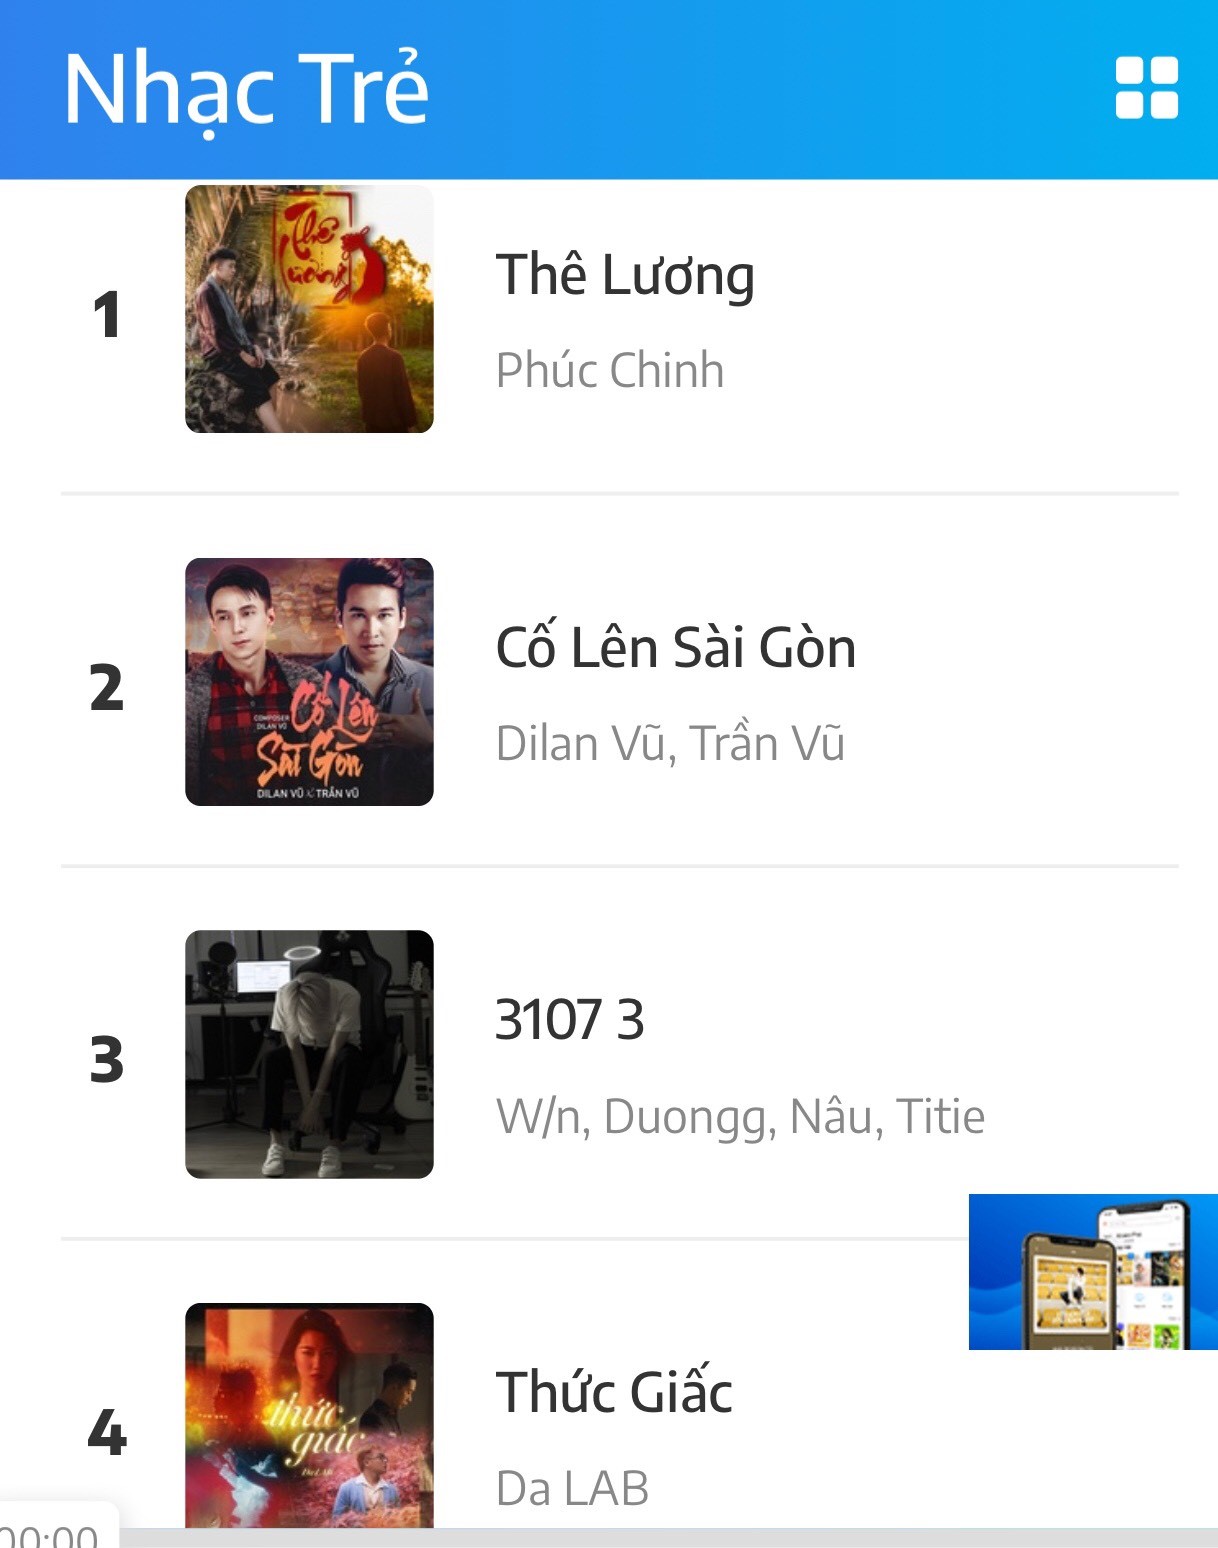 co len sai gon 3 Dilan Vũ và Trần Vũ lên top 1 nghệ sĩ trending với Cố lên Sài Gòn